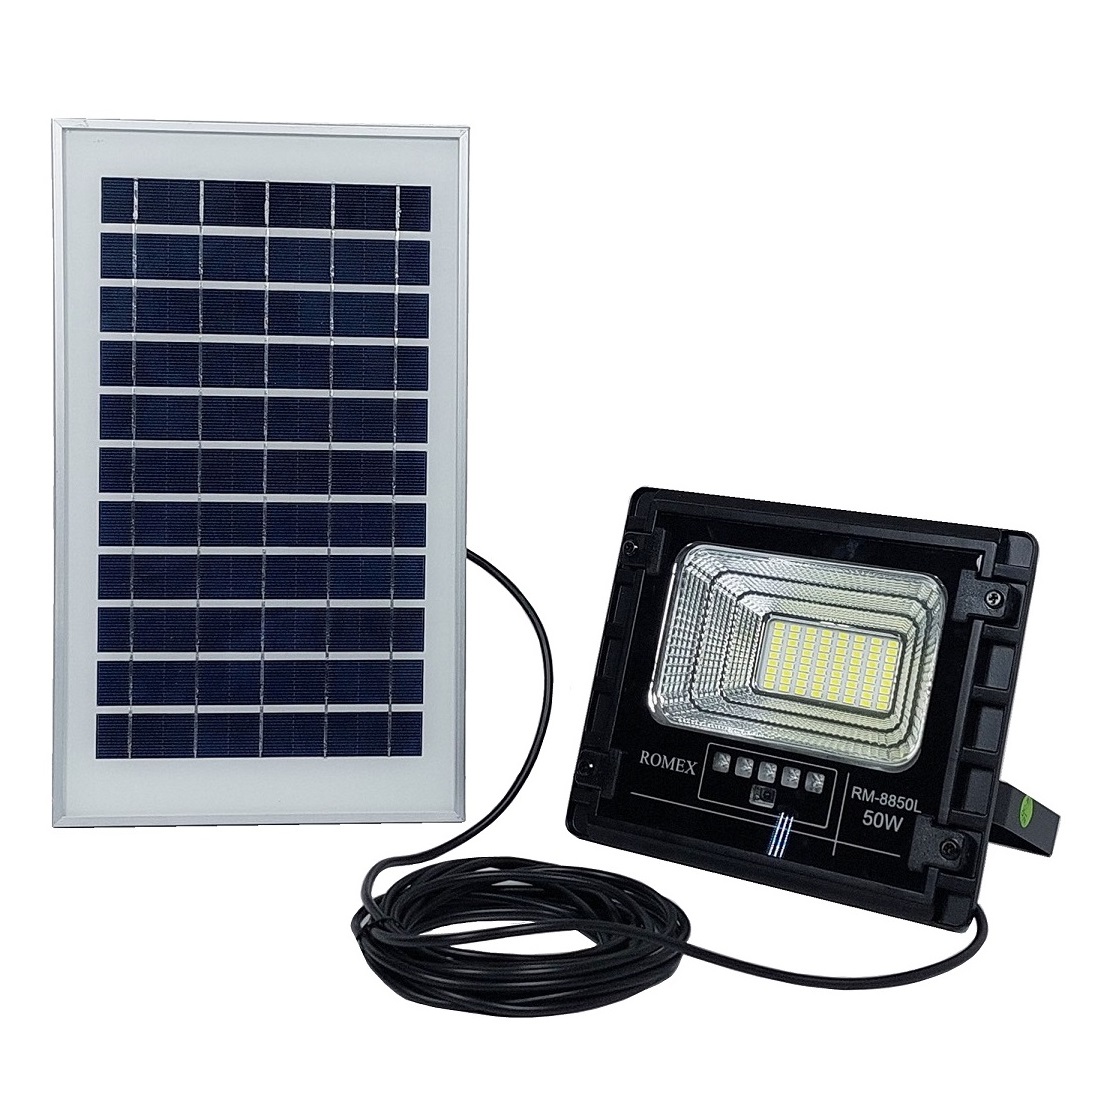 نکته خرید - قیمت روز پروژکتور خورشیدی رومکس مدل RM-8850L خرید